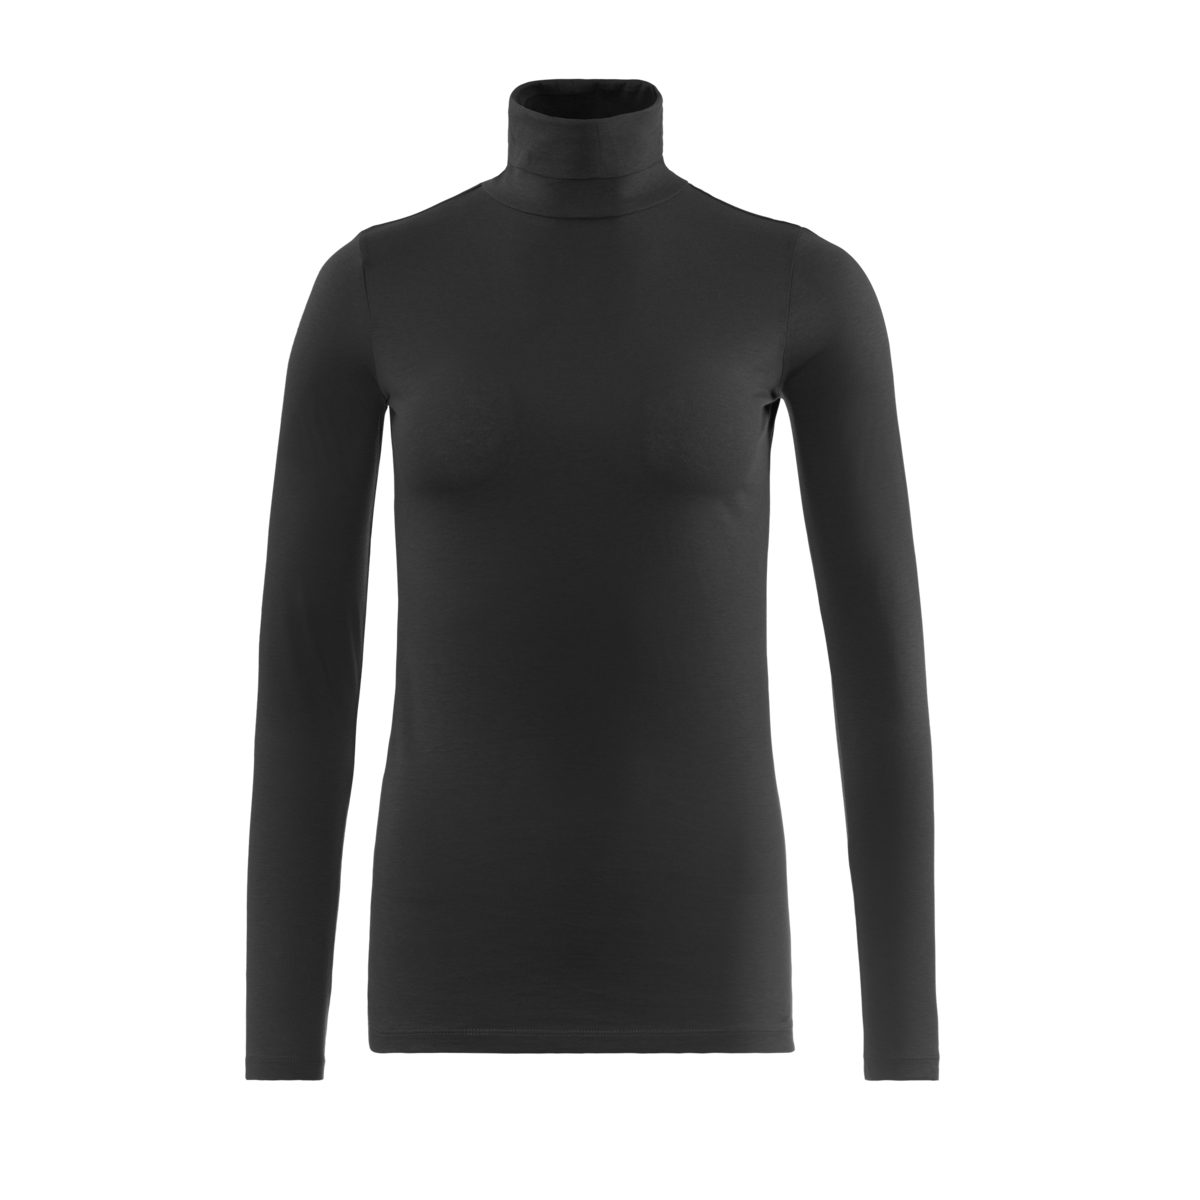 Rollkragen Langarm-Shirt NIA LIVING angesagtem Rollkragenshirt Black CRAFTS mit Feines